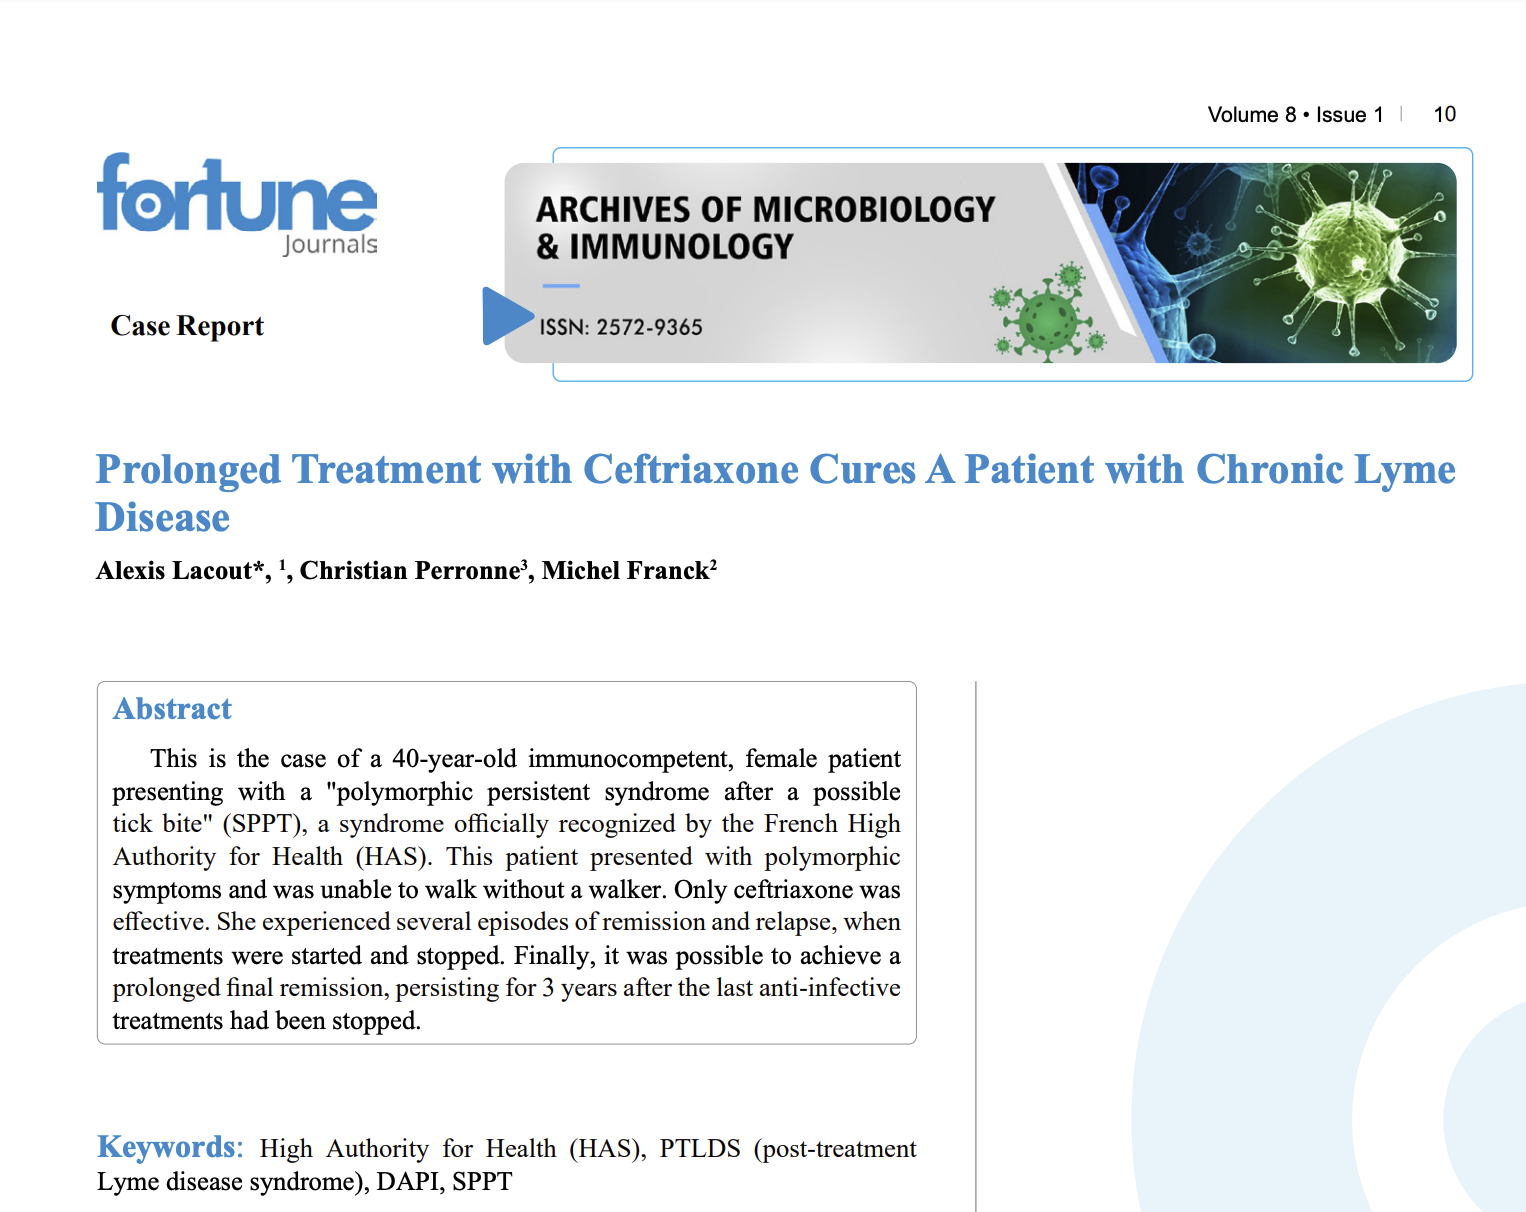 Un traitement prolongé à la ceftriaxone guérit un patient atteint de la maladie de Lyme chronique – nouvelle étude soutenue par BonSens.org